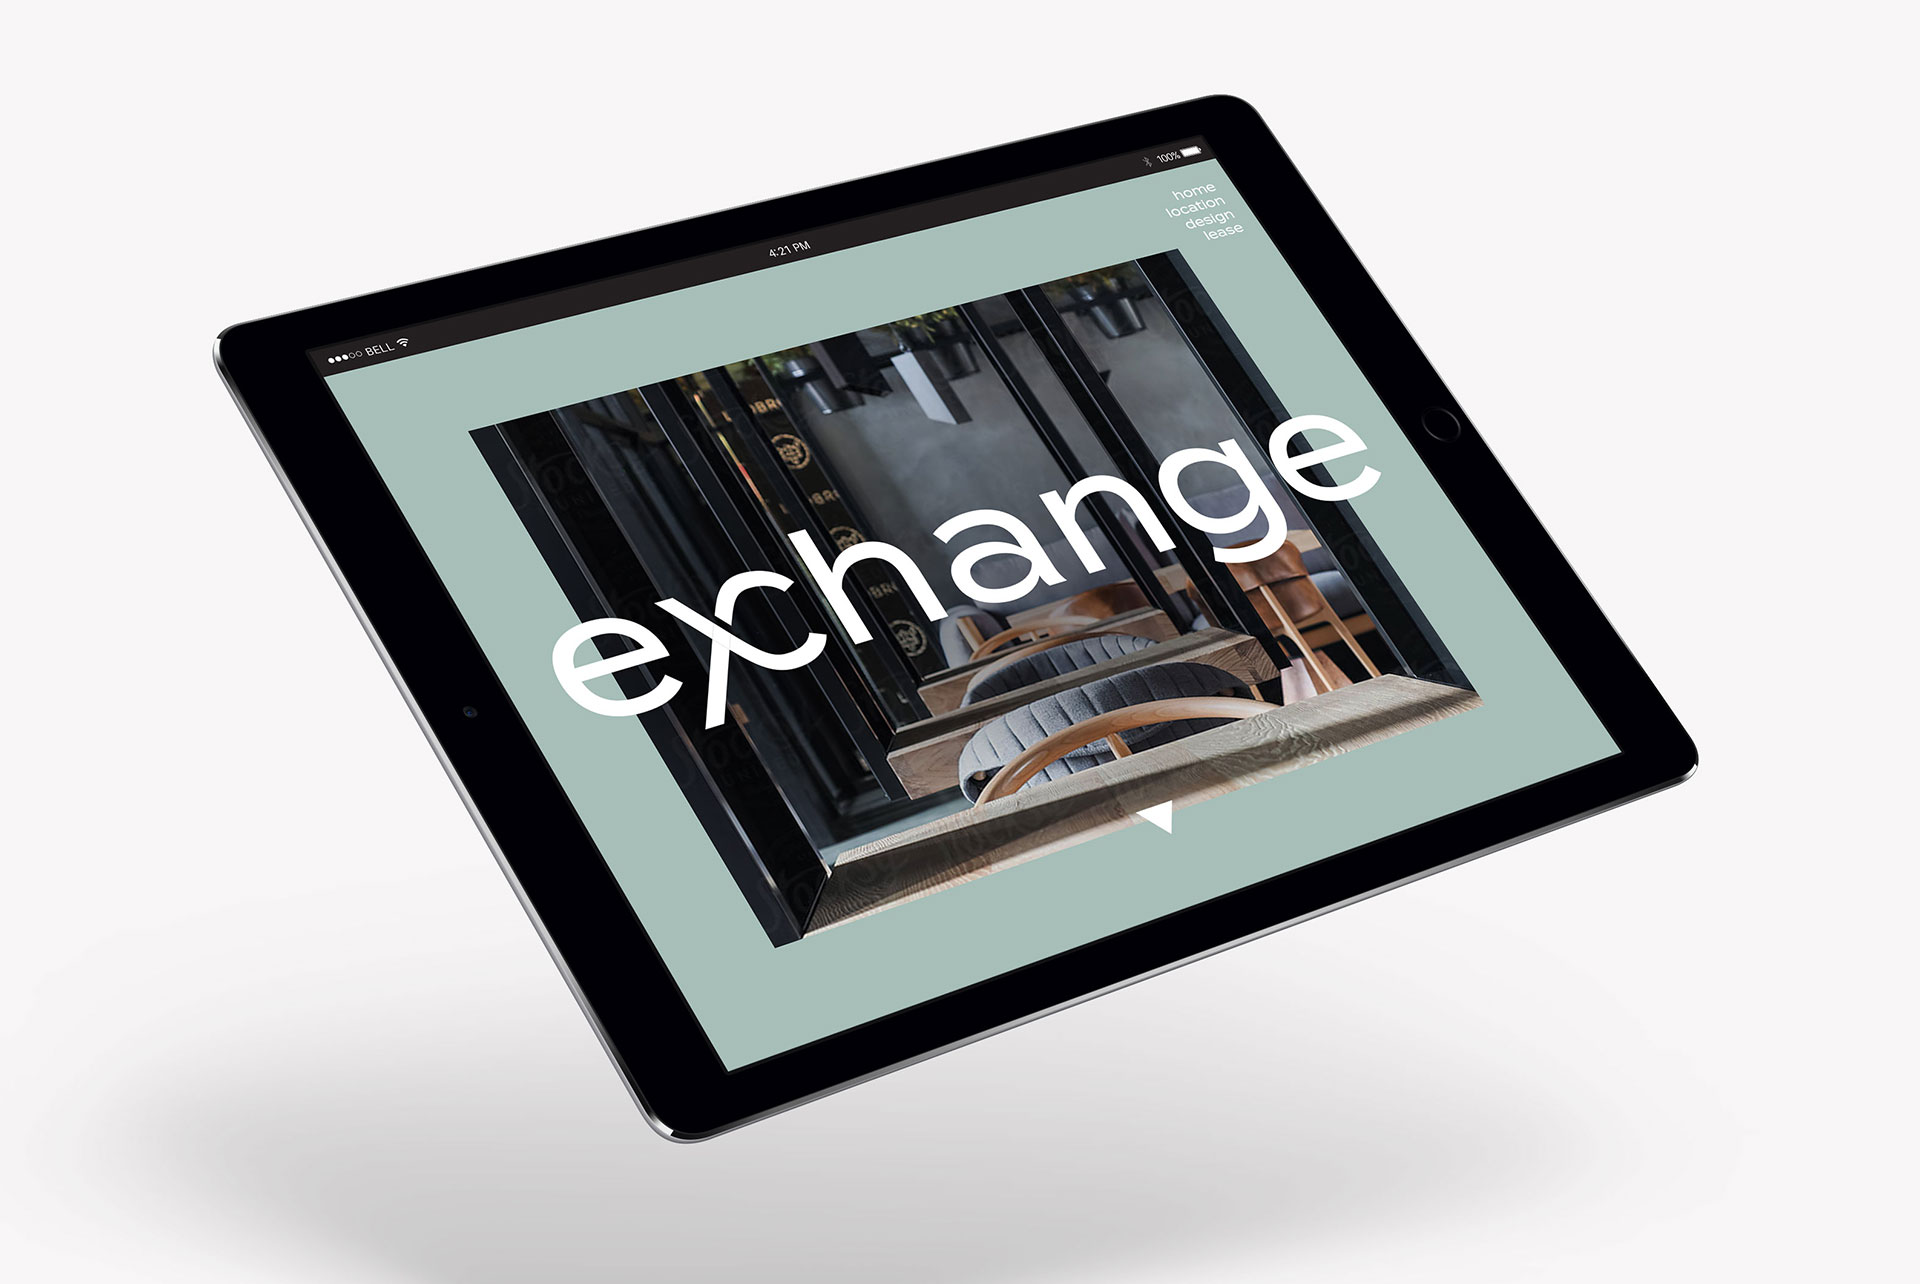 Zoyes | Exchange